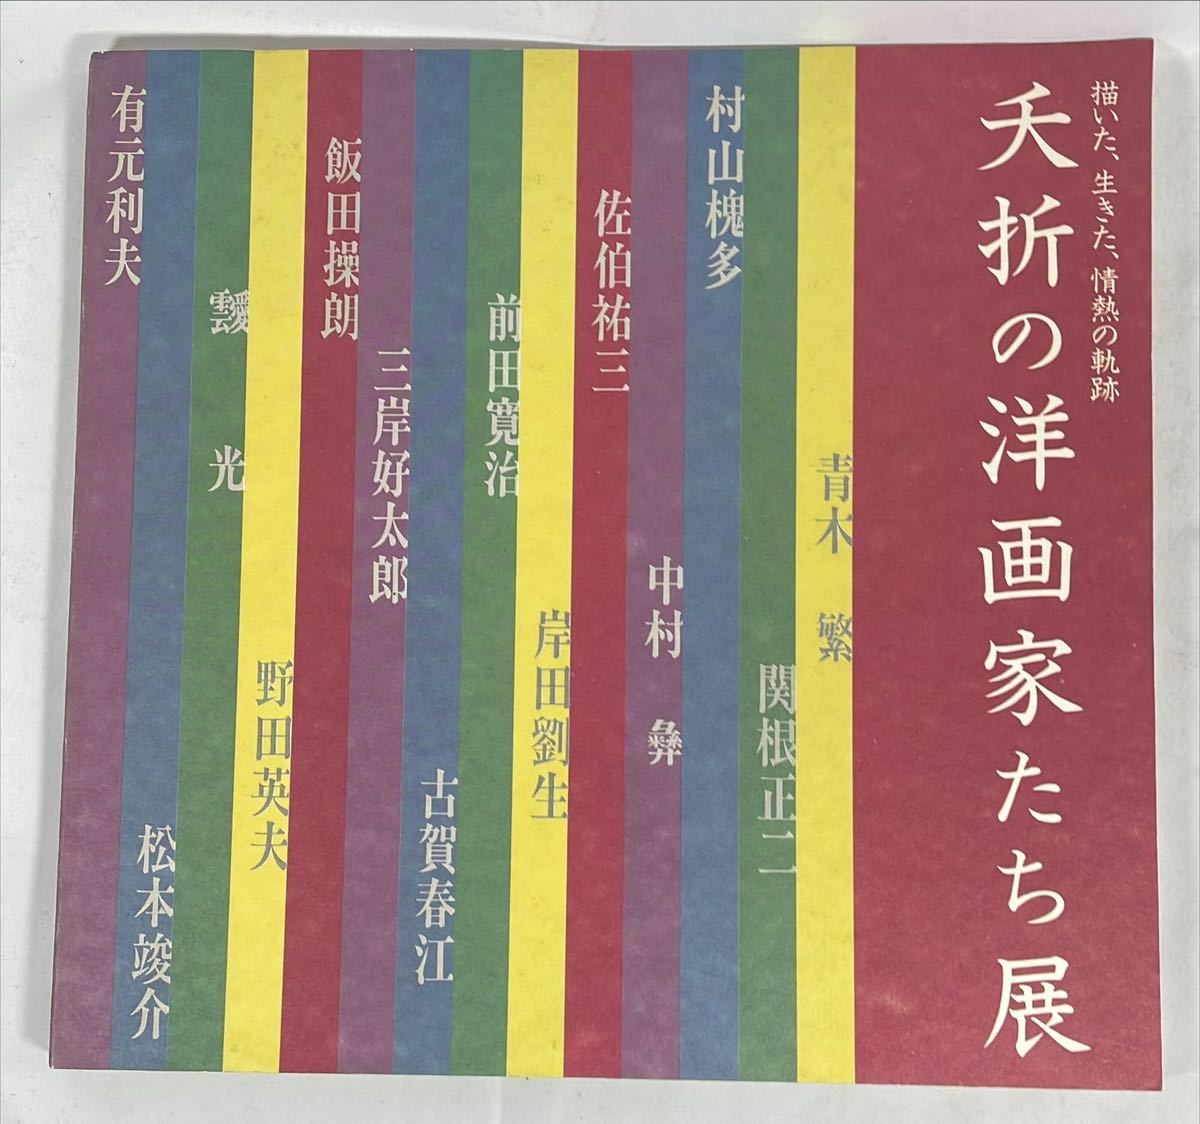 夭折の洋画家たち展　描いた、生きた、情熱の軌跡　編集・発行:日本経済新聞社　1993年_画像1